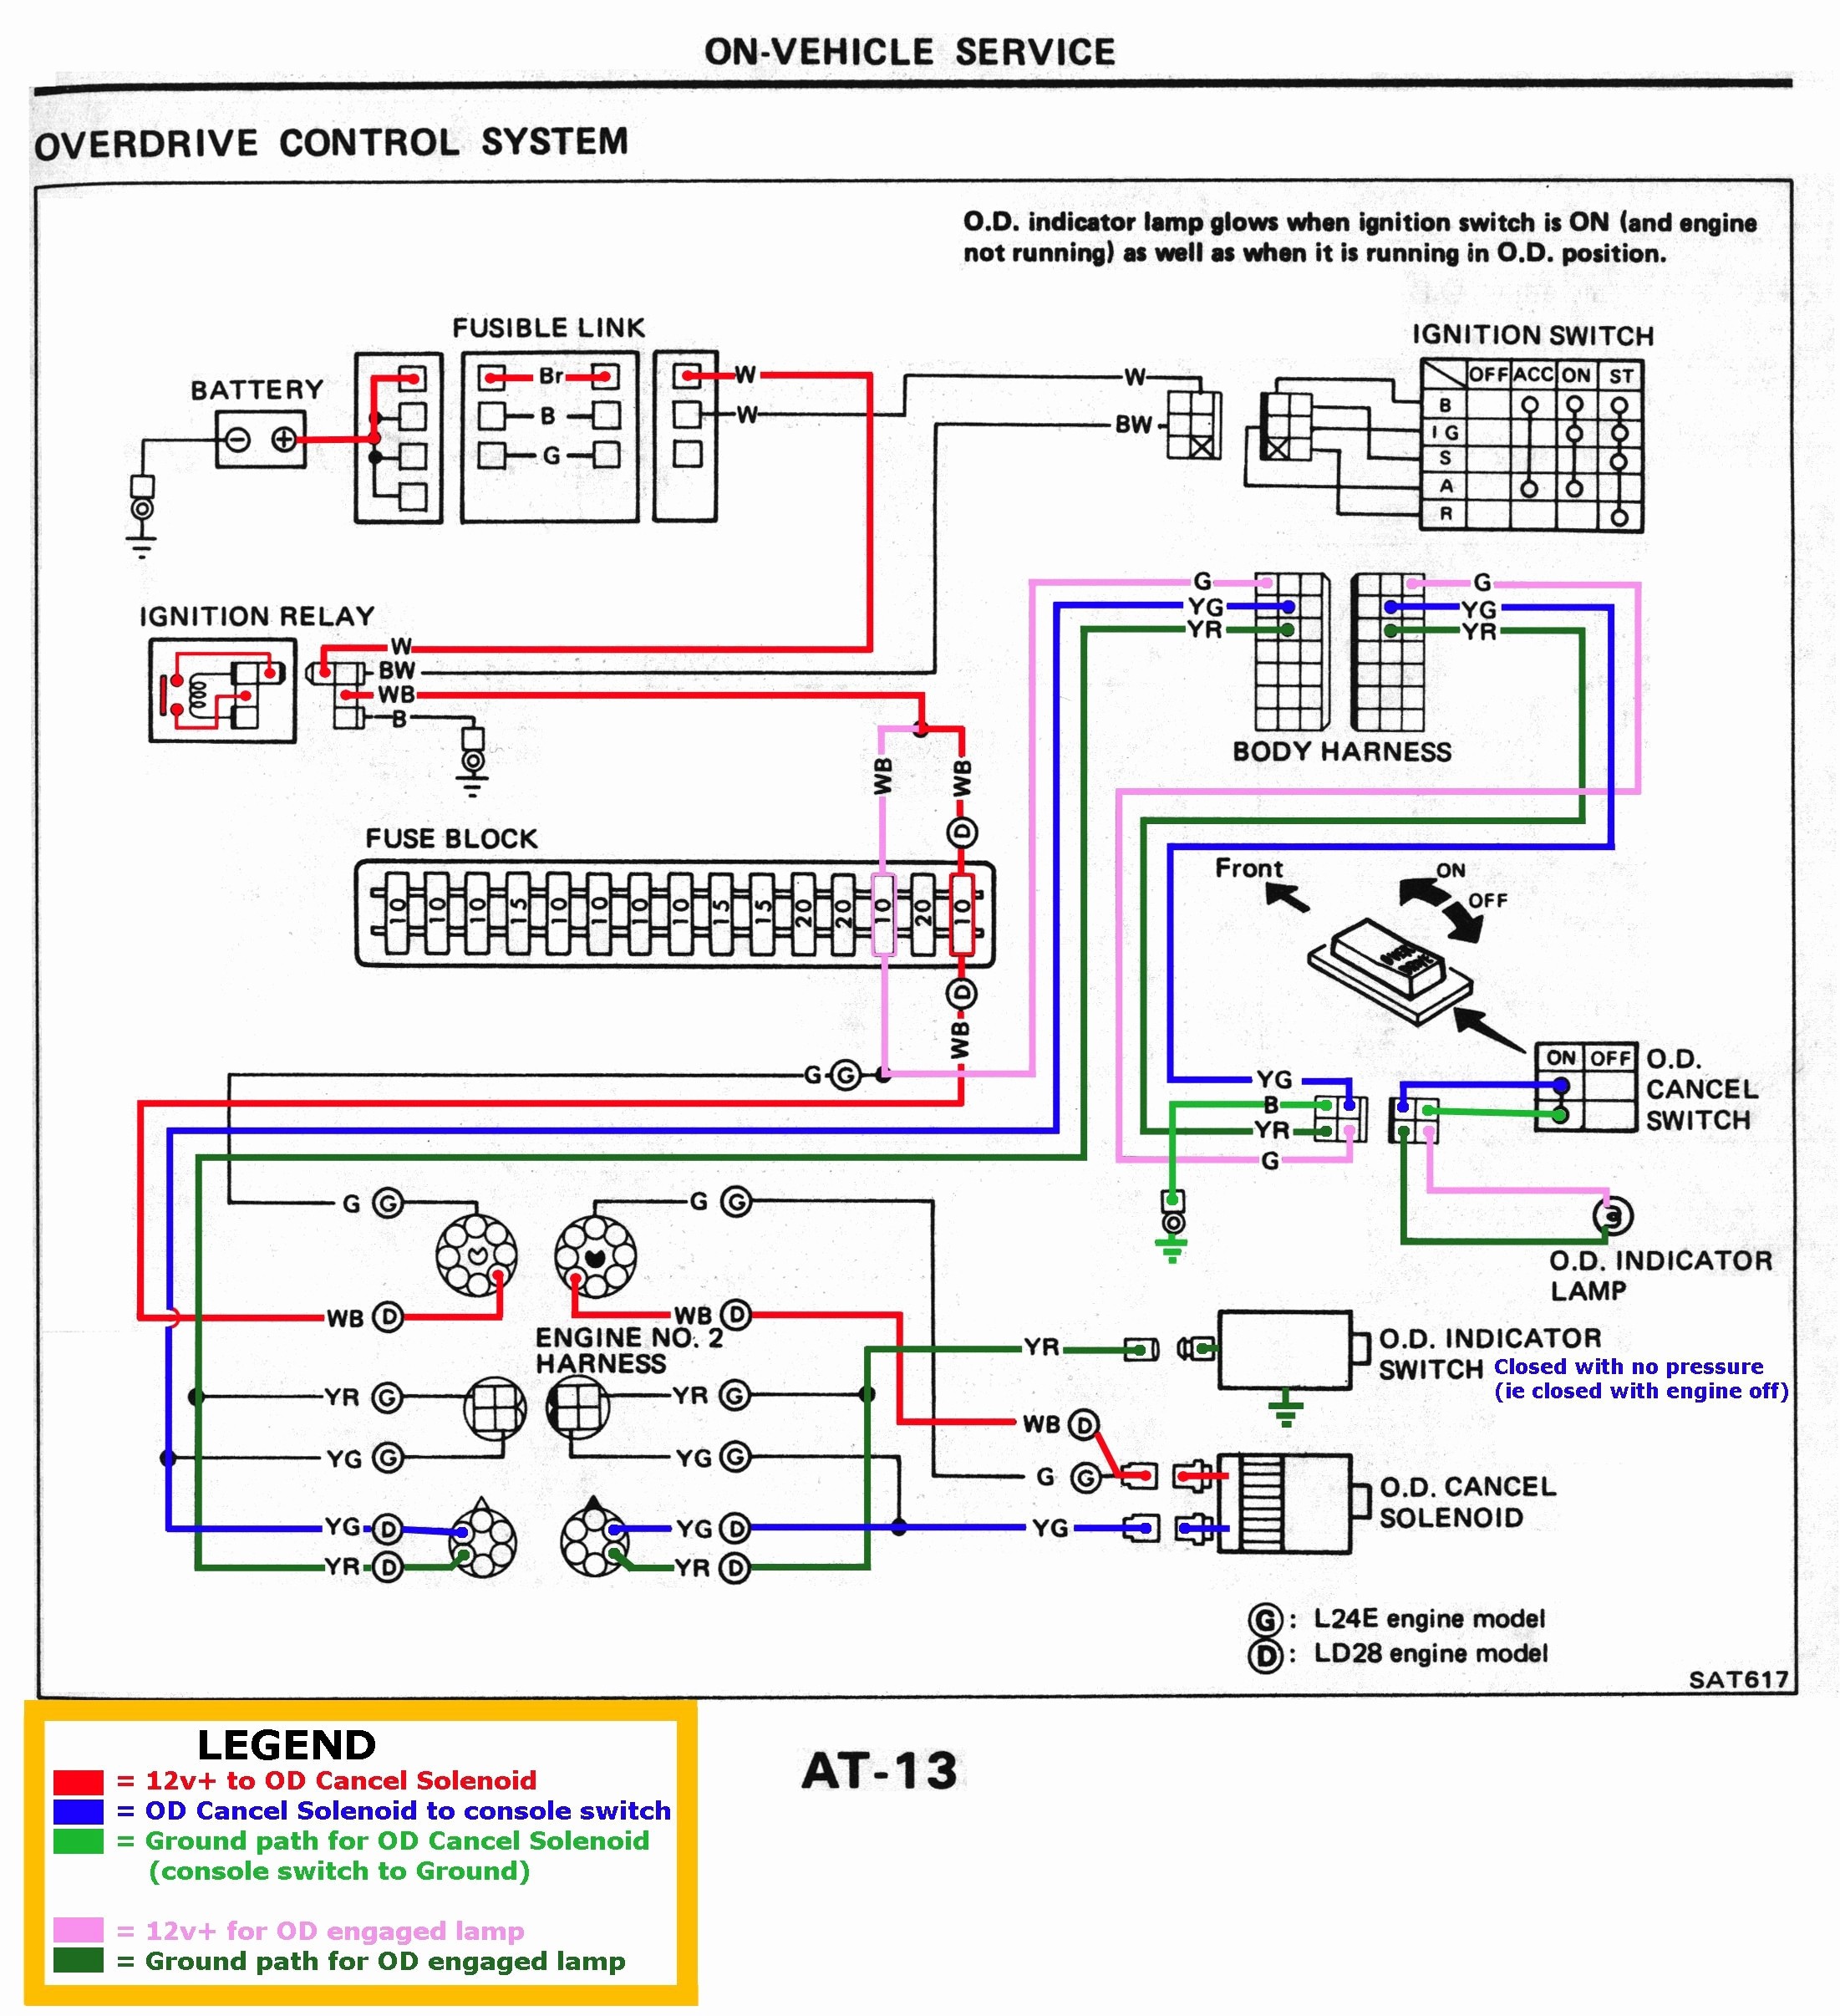 Air pressor Pressure Switch Wiring Diagram Book Square D Air Pressor Pressure Switch Wiring Diagram